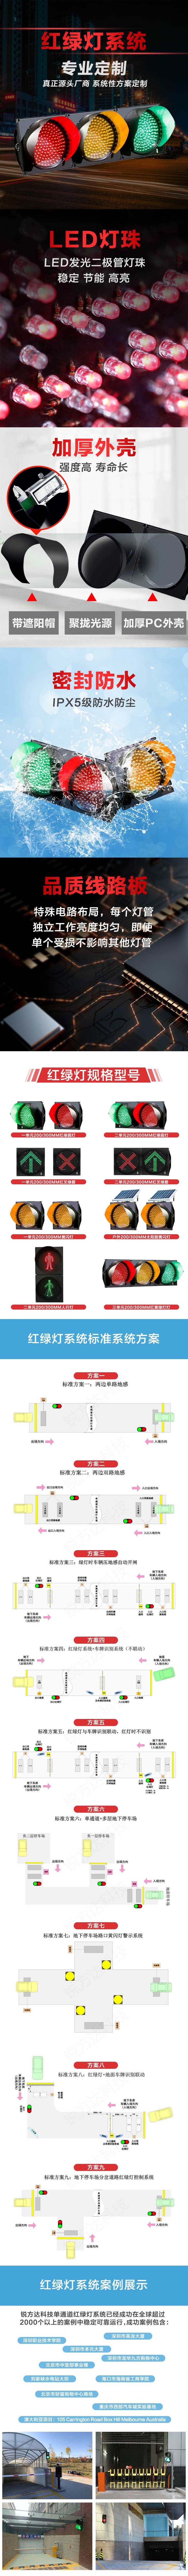 停车场红绿灯智能控制系统